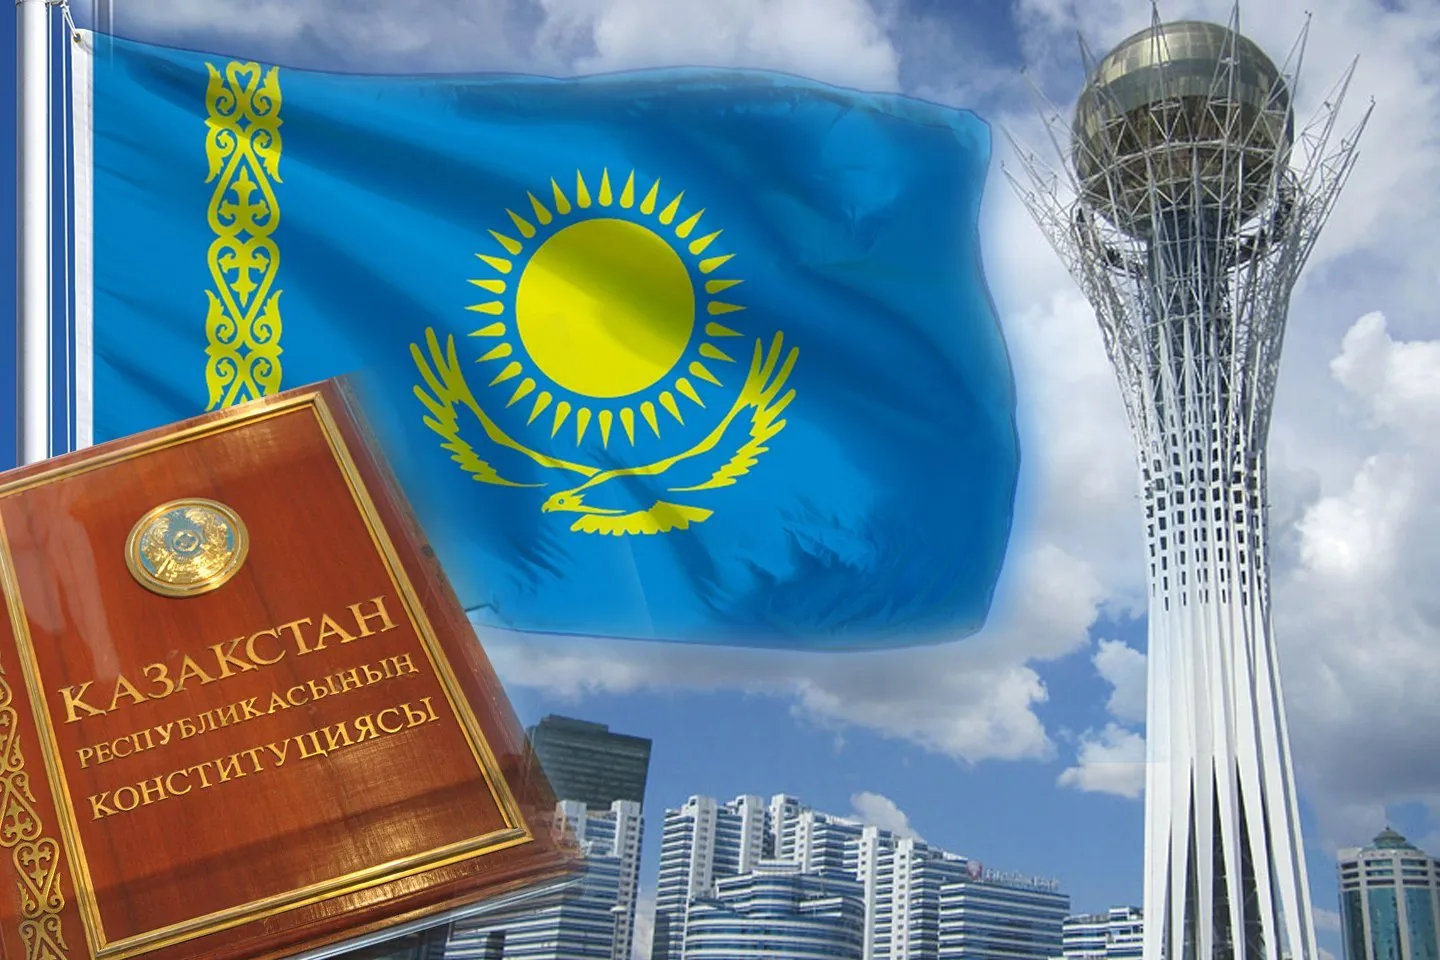 Новости Казахстана / Общество в Казахстане / Инаугурация президента Казахстана началась в Астане